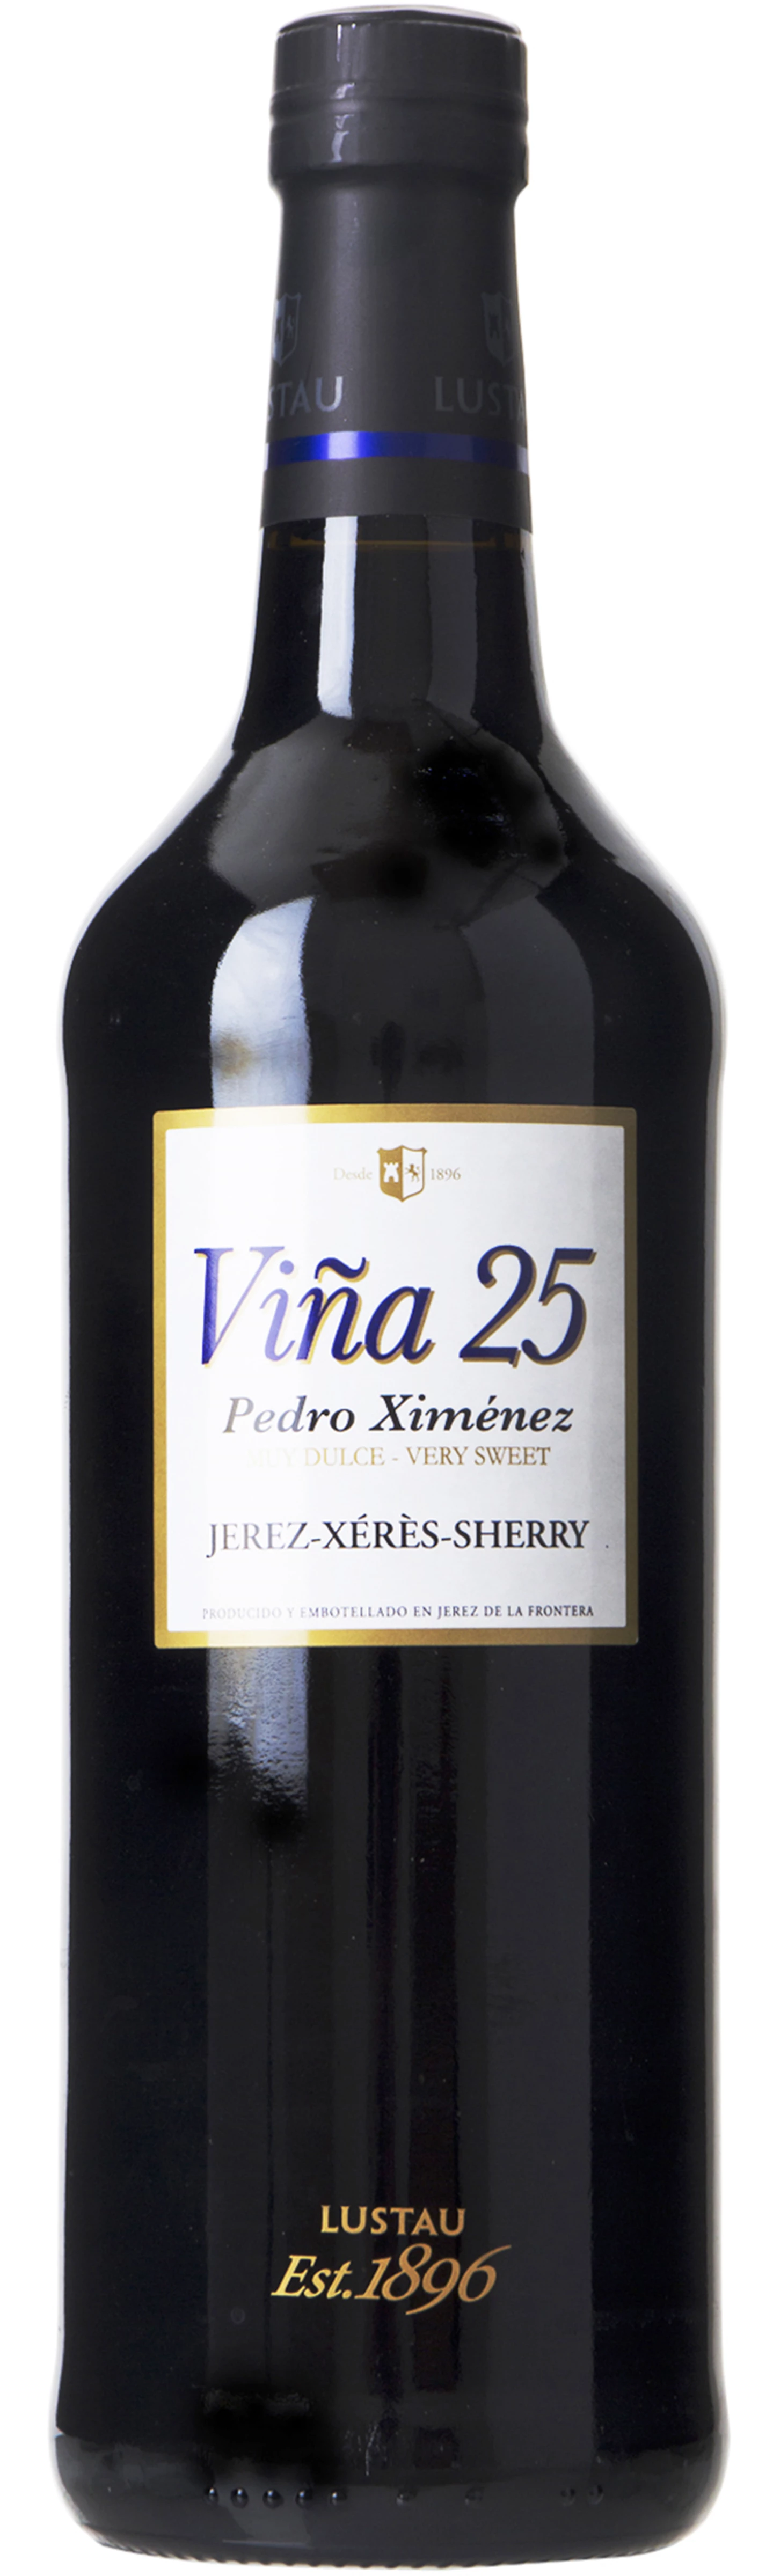 Løgismose Sherry Emilio Lustau Sherry Pedro Ximenez Viña 25 - 127159